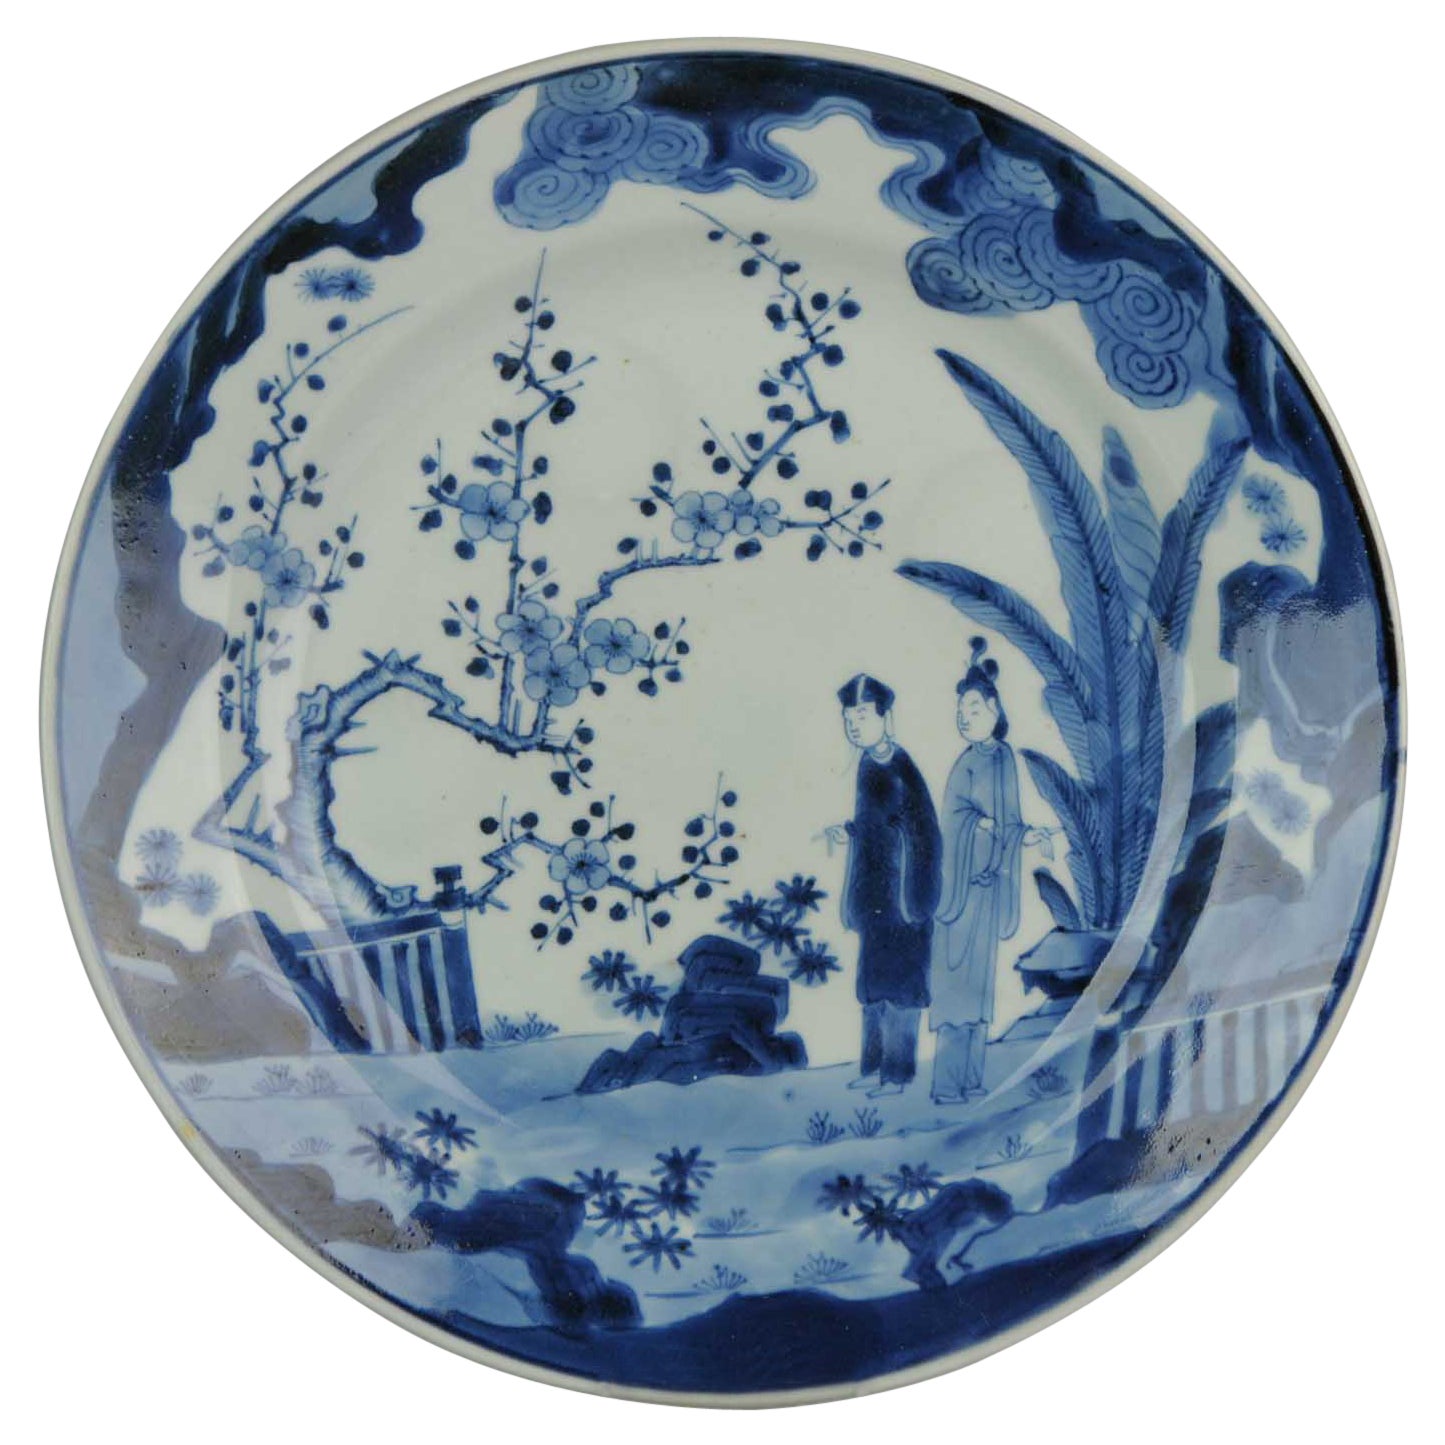 Antike japanische Edo-Porzellan-Tellerfiguren in Blau und Weiß aus dem 17. und 18. Jahrhundert